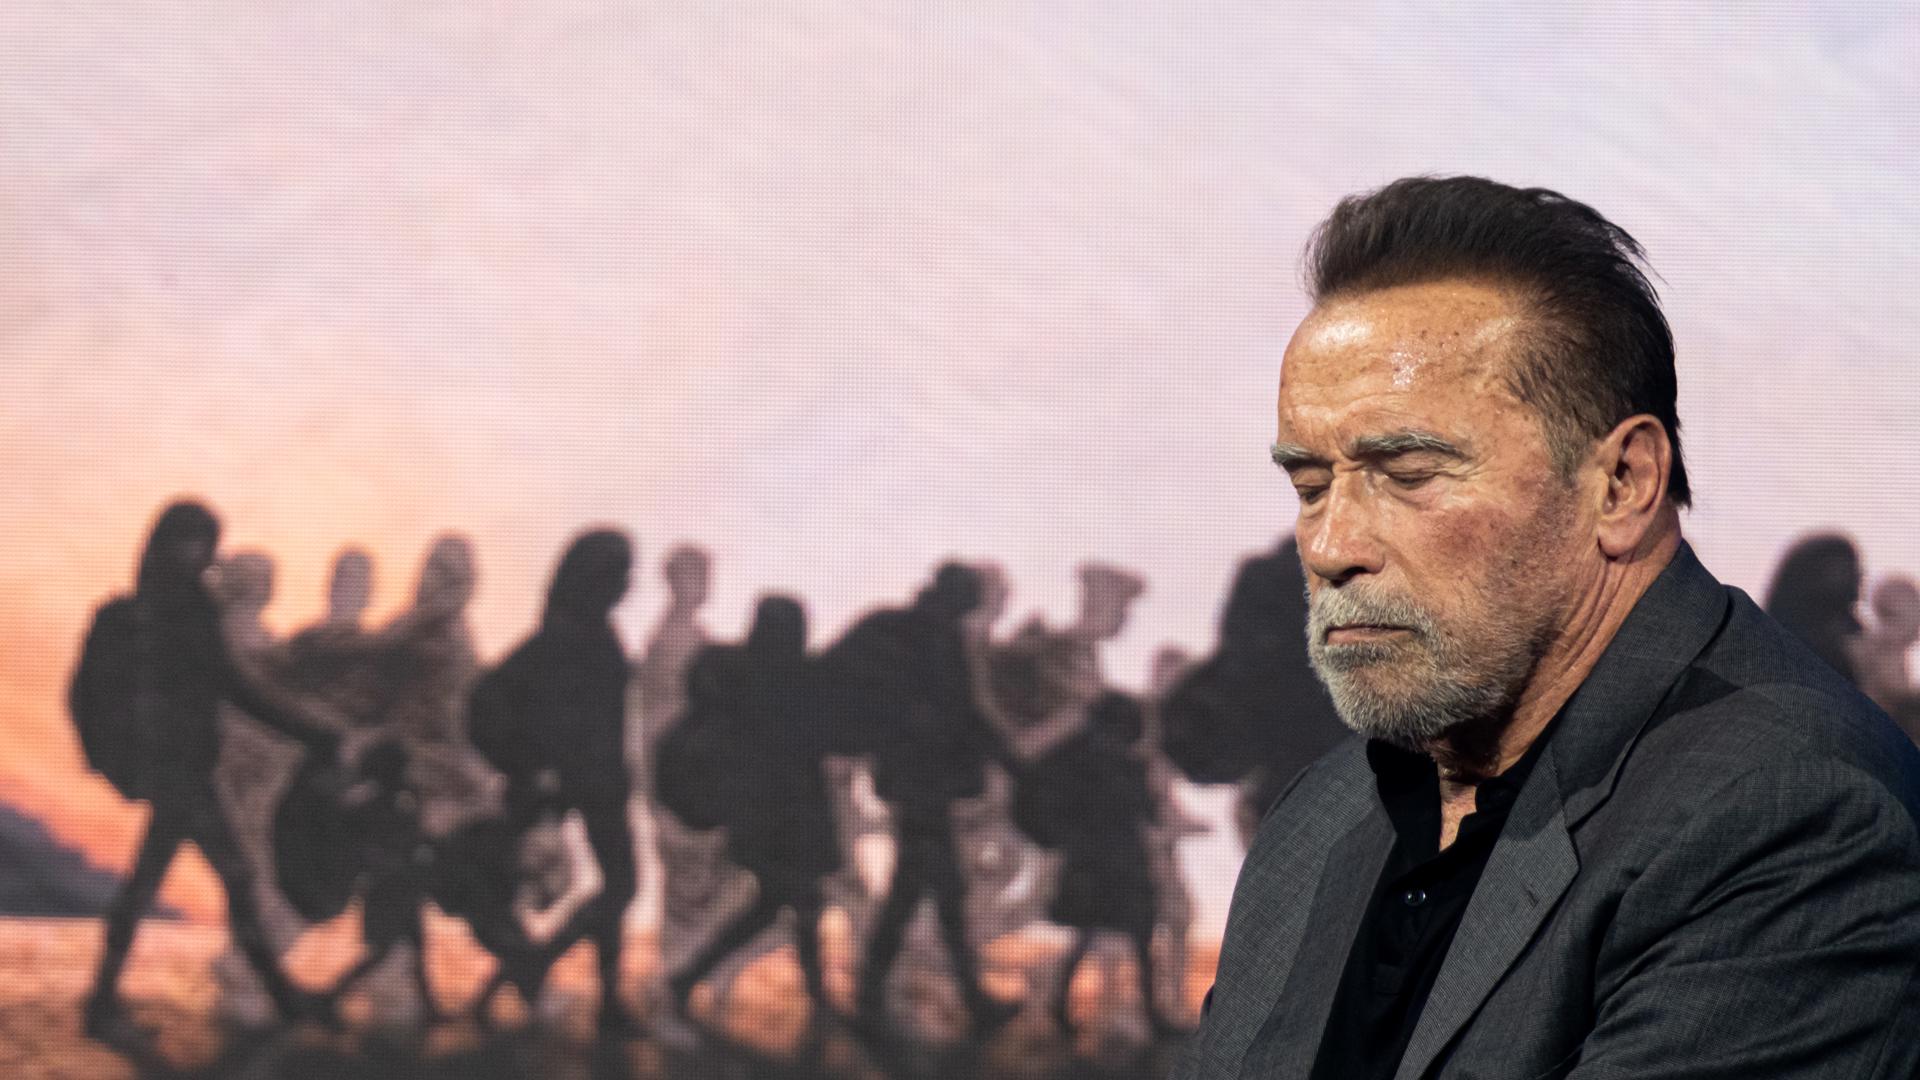 Arnold Schwarzenegger, por un nuevo movimiento medioambiental que impulse las energías limpias